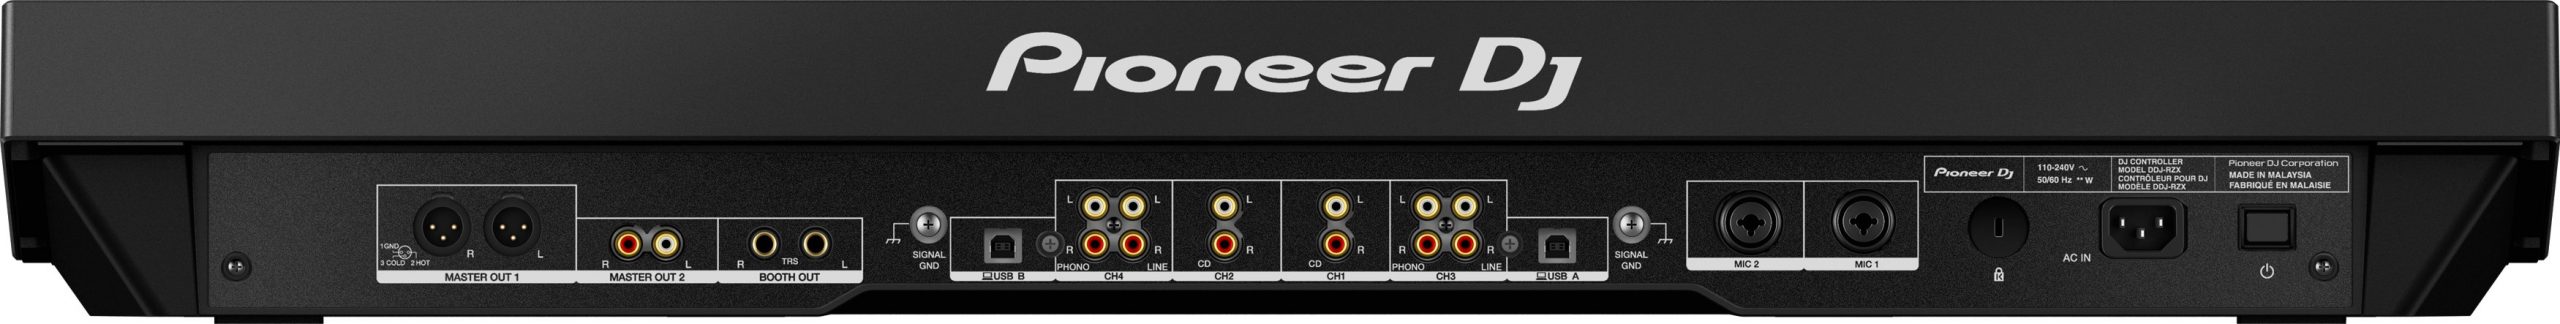 PIONEER DDJ-RZX CONSOLLE DJ 4 CANALI REKORDBOX DJ E REKORDBOX VIDEO USB SCHERMI 7 1